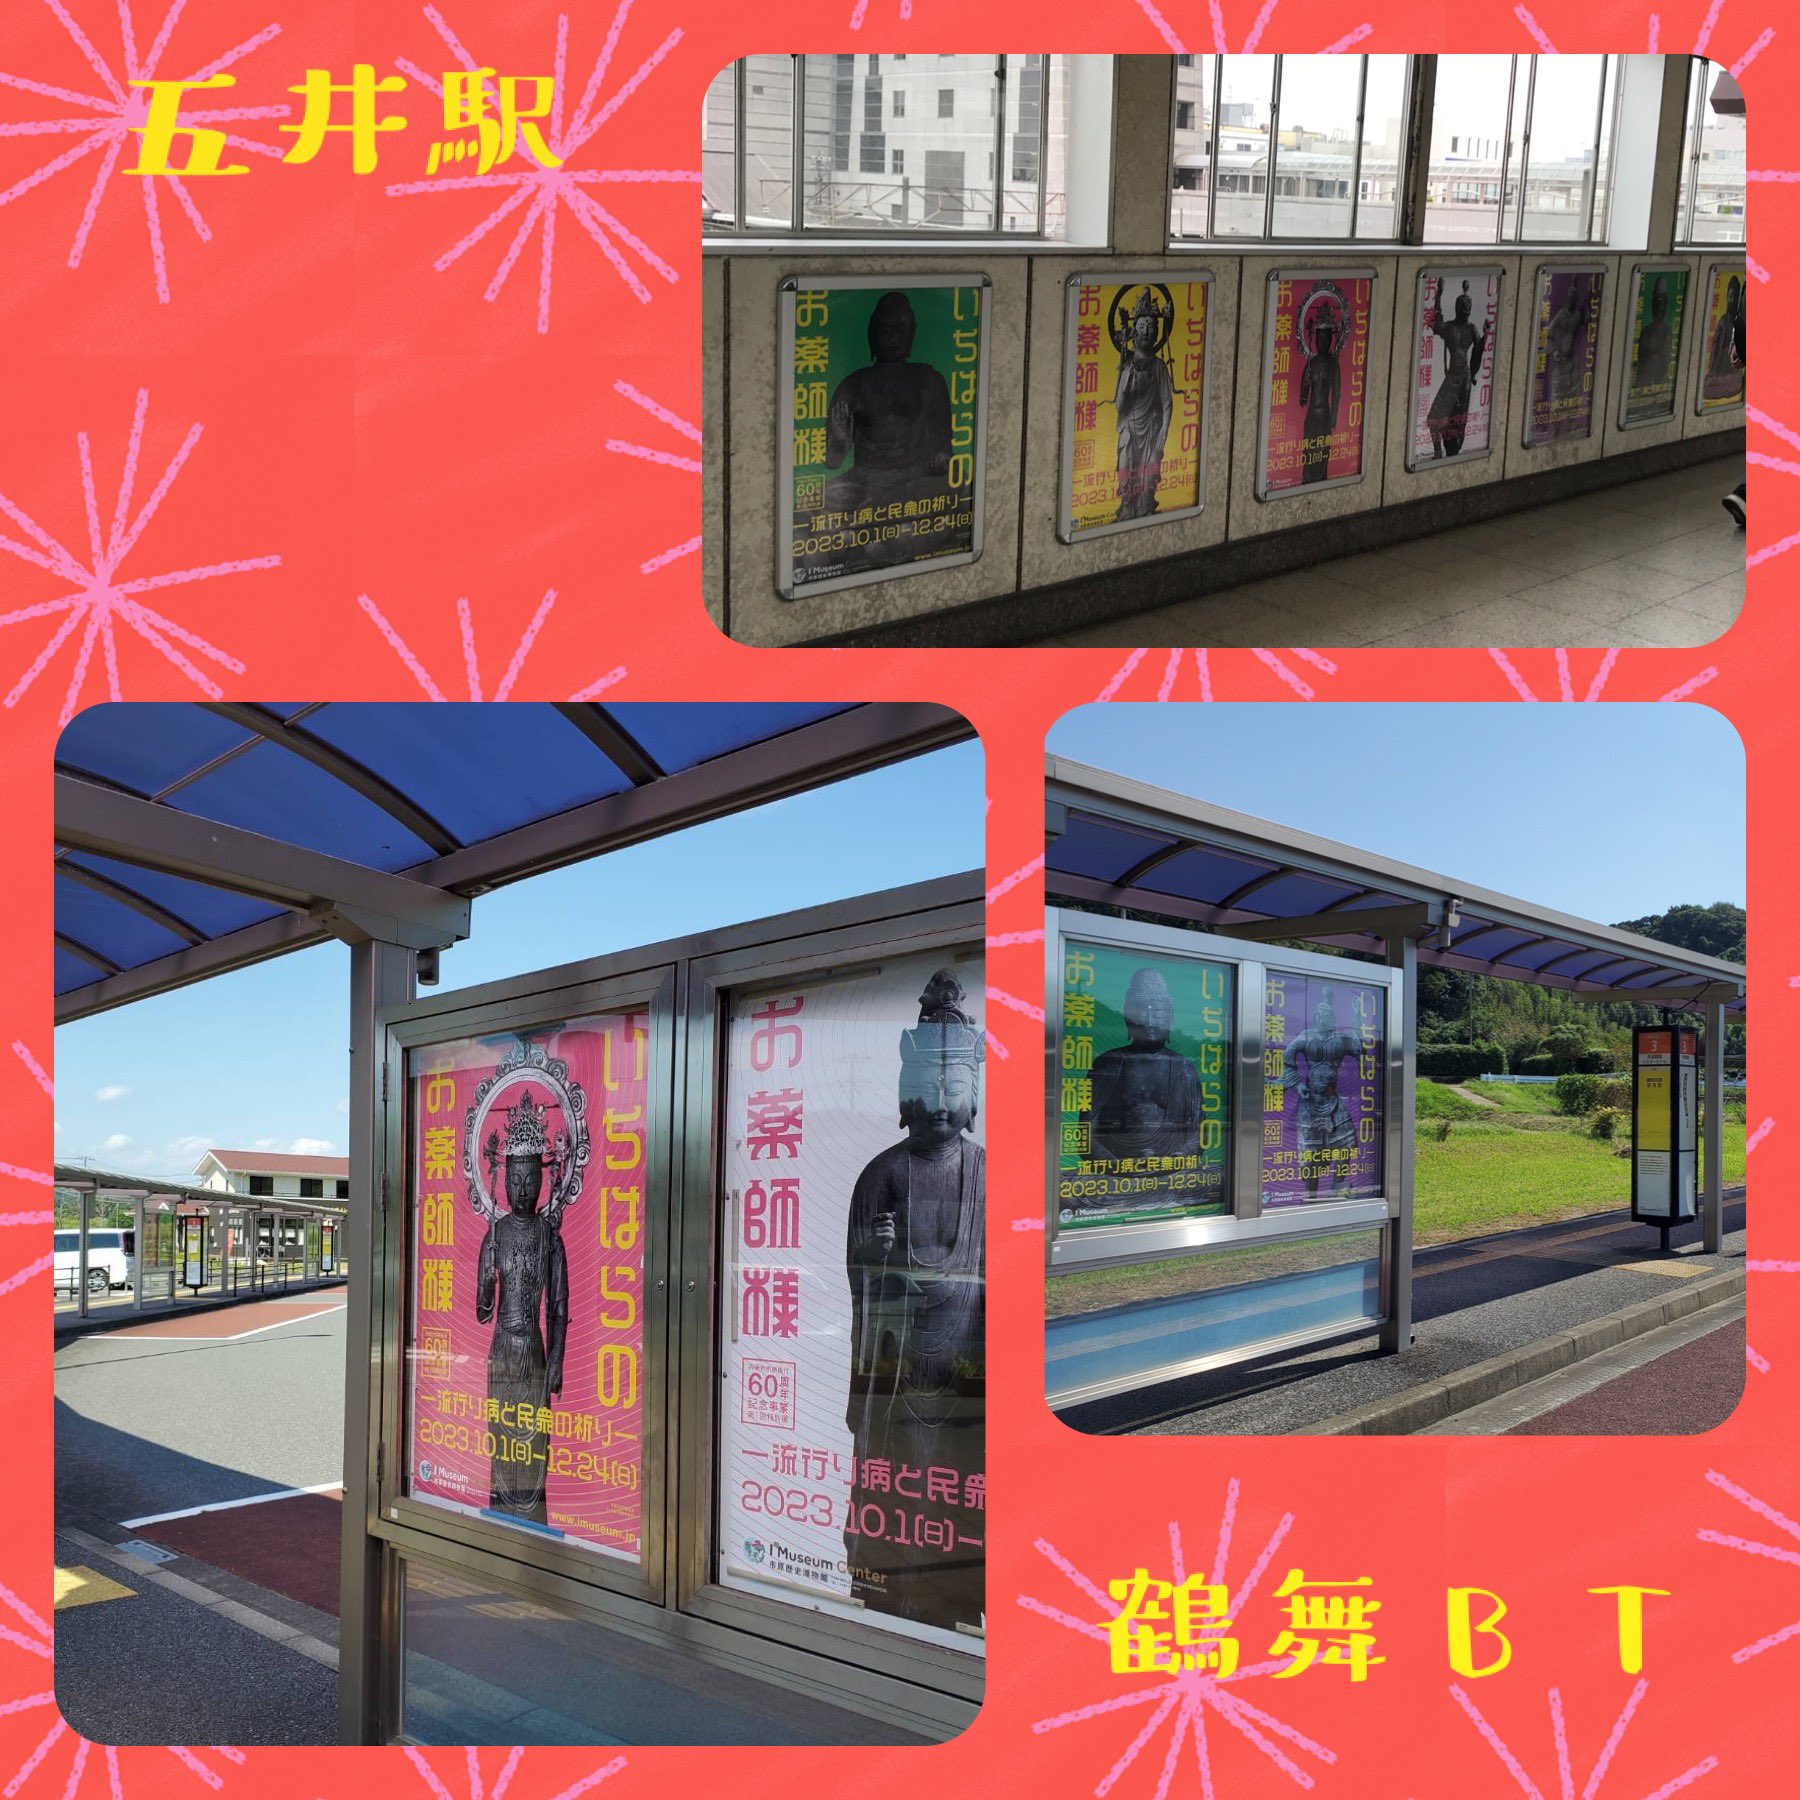 五井駅と鶴舞バスターミナルのポスター